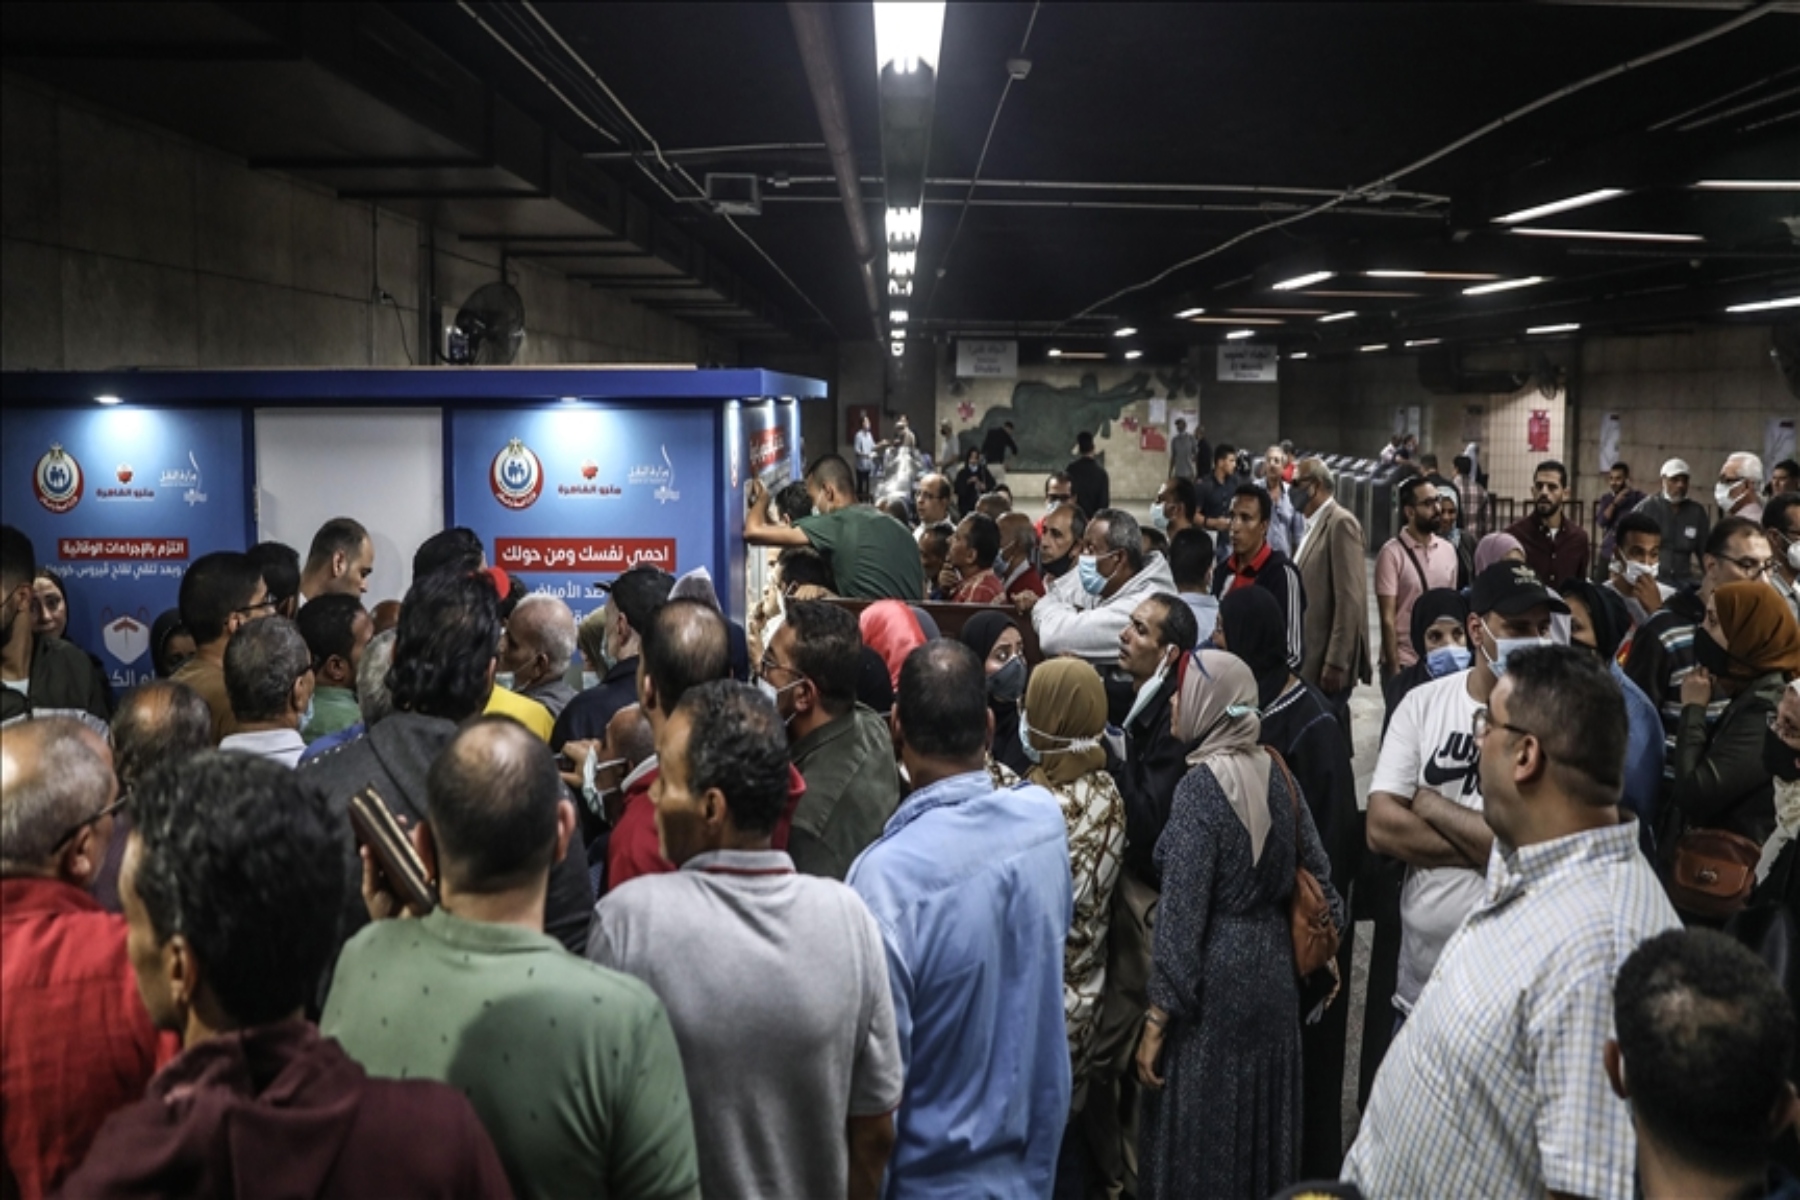 Αίγυπτος Όμικρον: Η Αίγυπτος ανακοίνωσε τα 3 πρώτα κρούσματα της νέας παραλλαγής στο αεροδρόμιο του Καΐρου